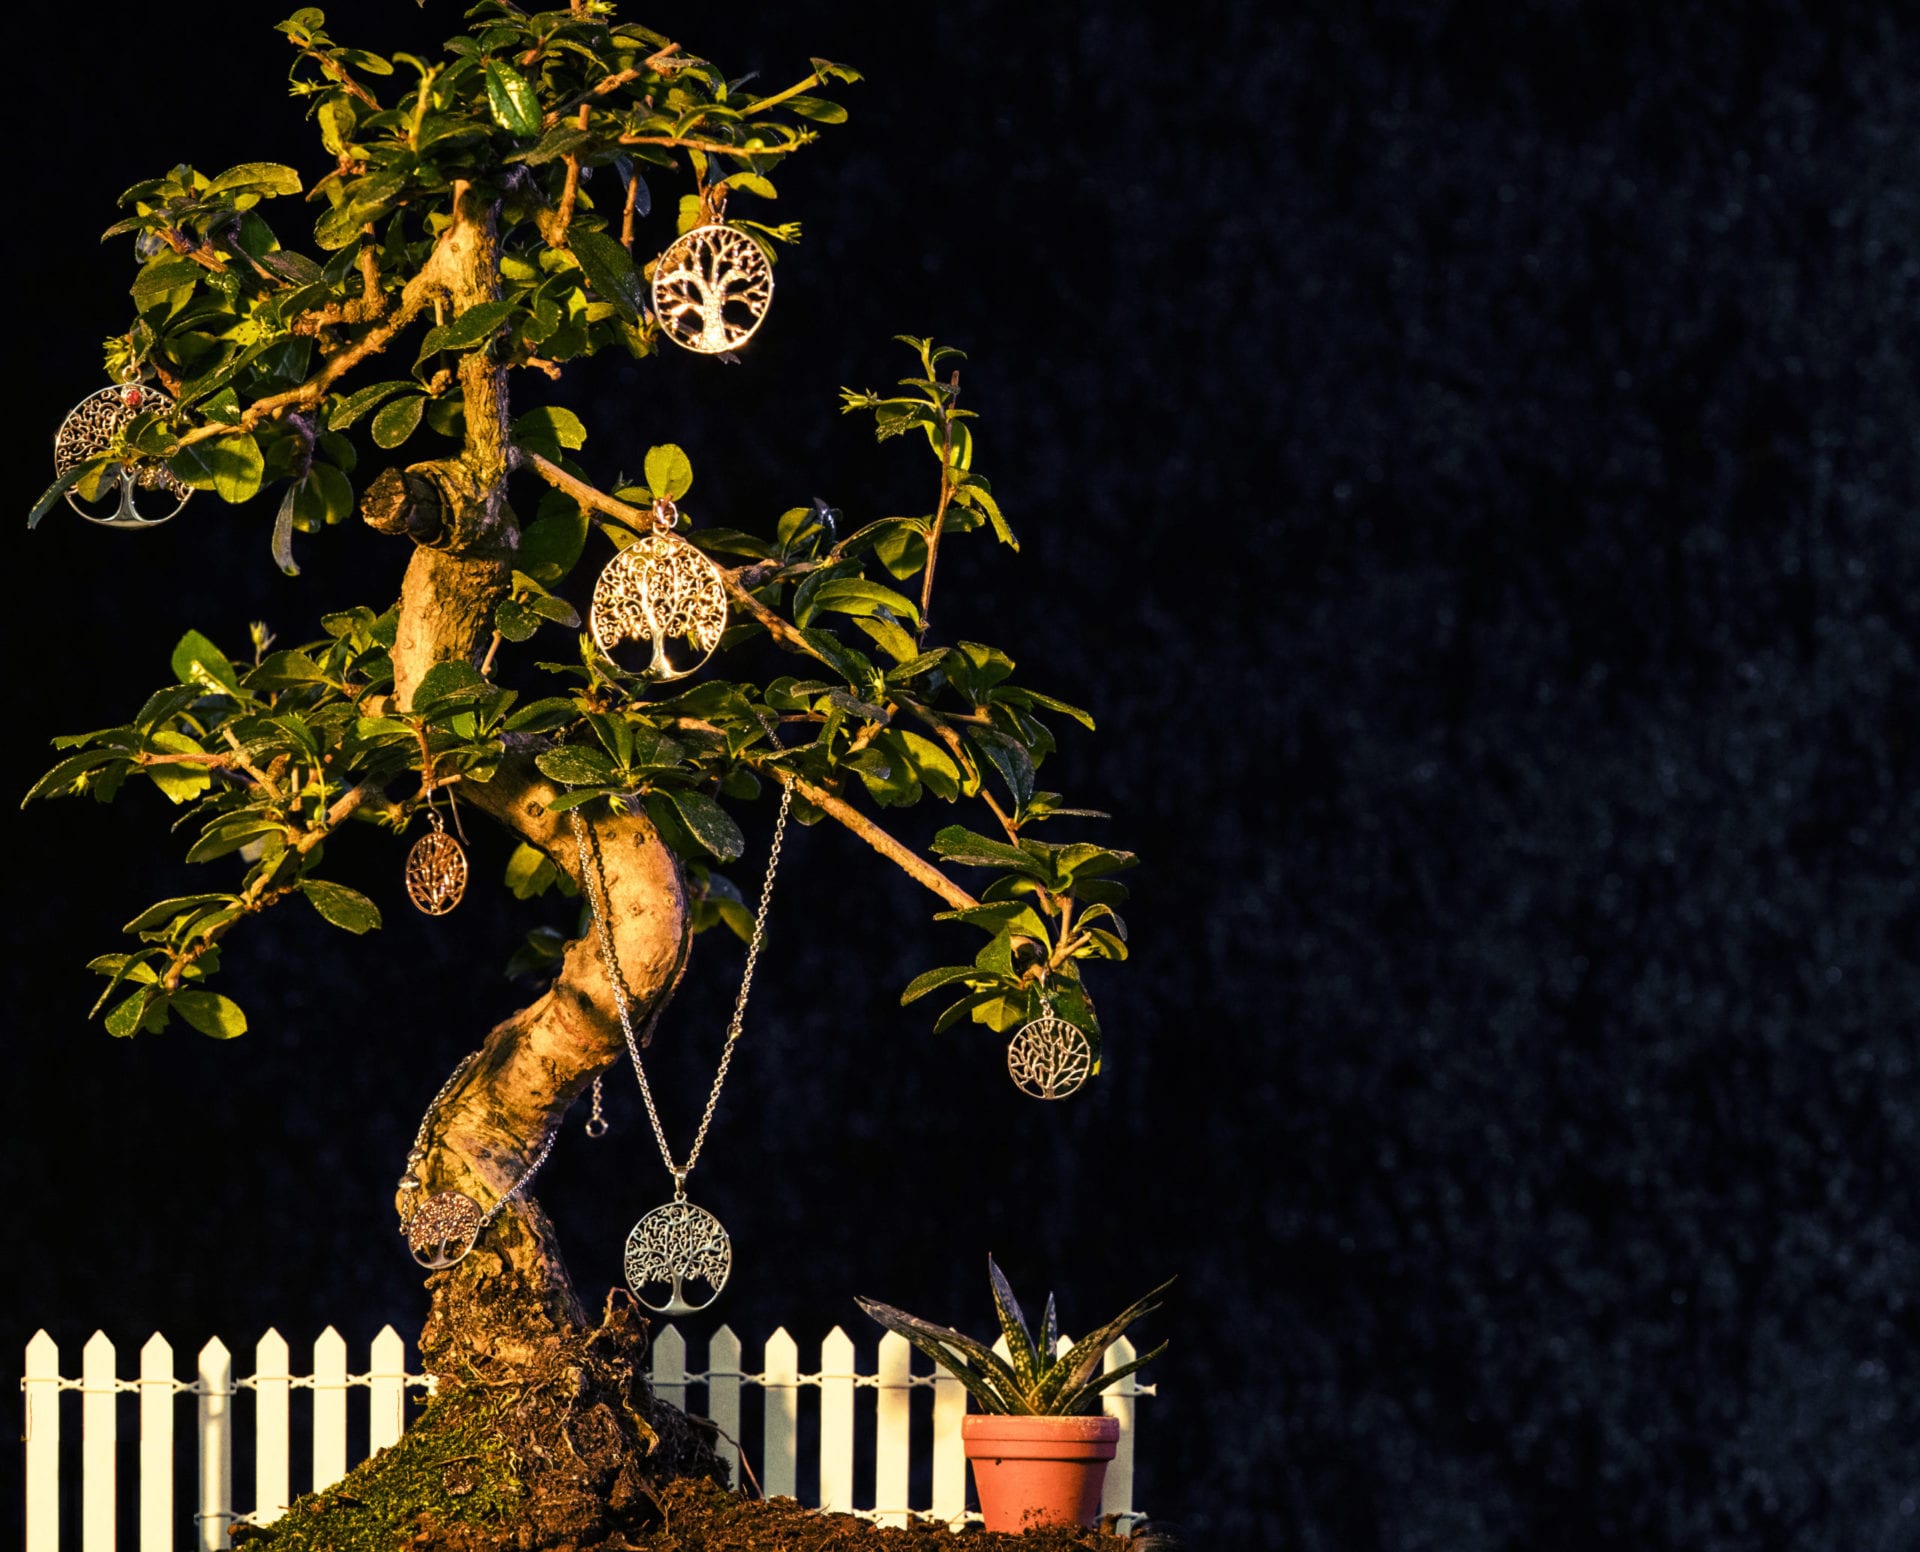 Produktbild von Lebensbaum-Anhängern an einem Bonsaibaum mit einem kleinen Zaun im Hintergrund und einer weiteren Pflanze